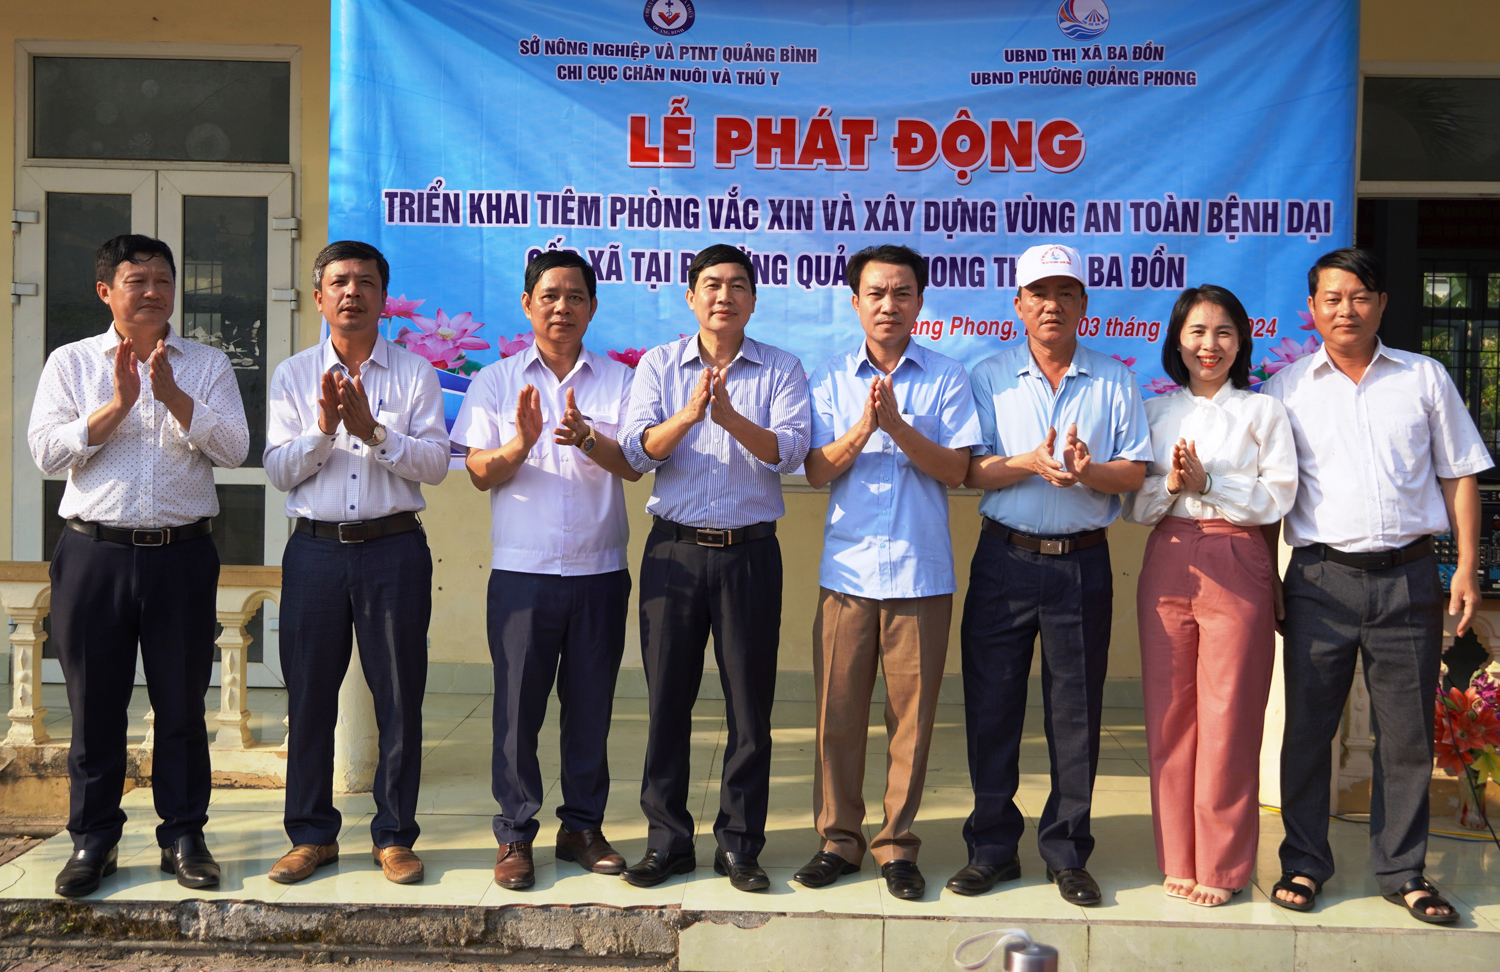 Xây dựng vùng an toàn bệnh dại tại phường Quảng Phong